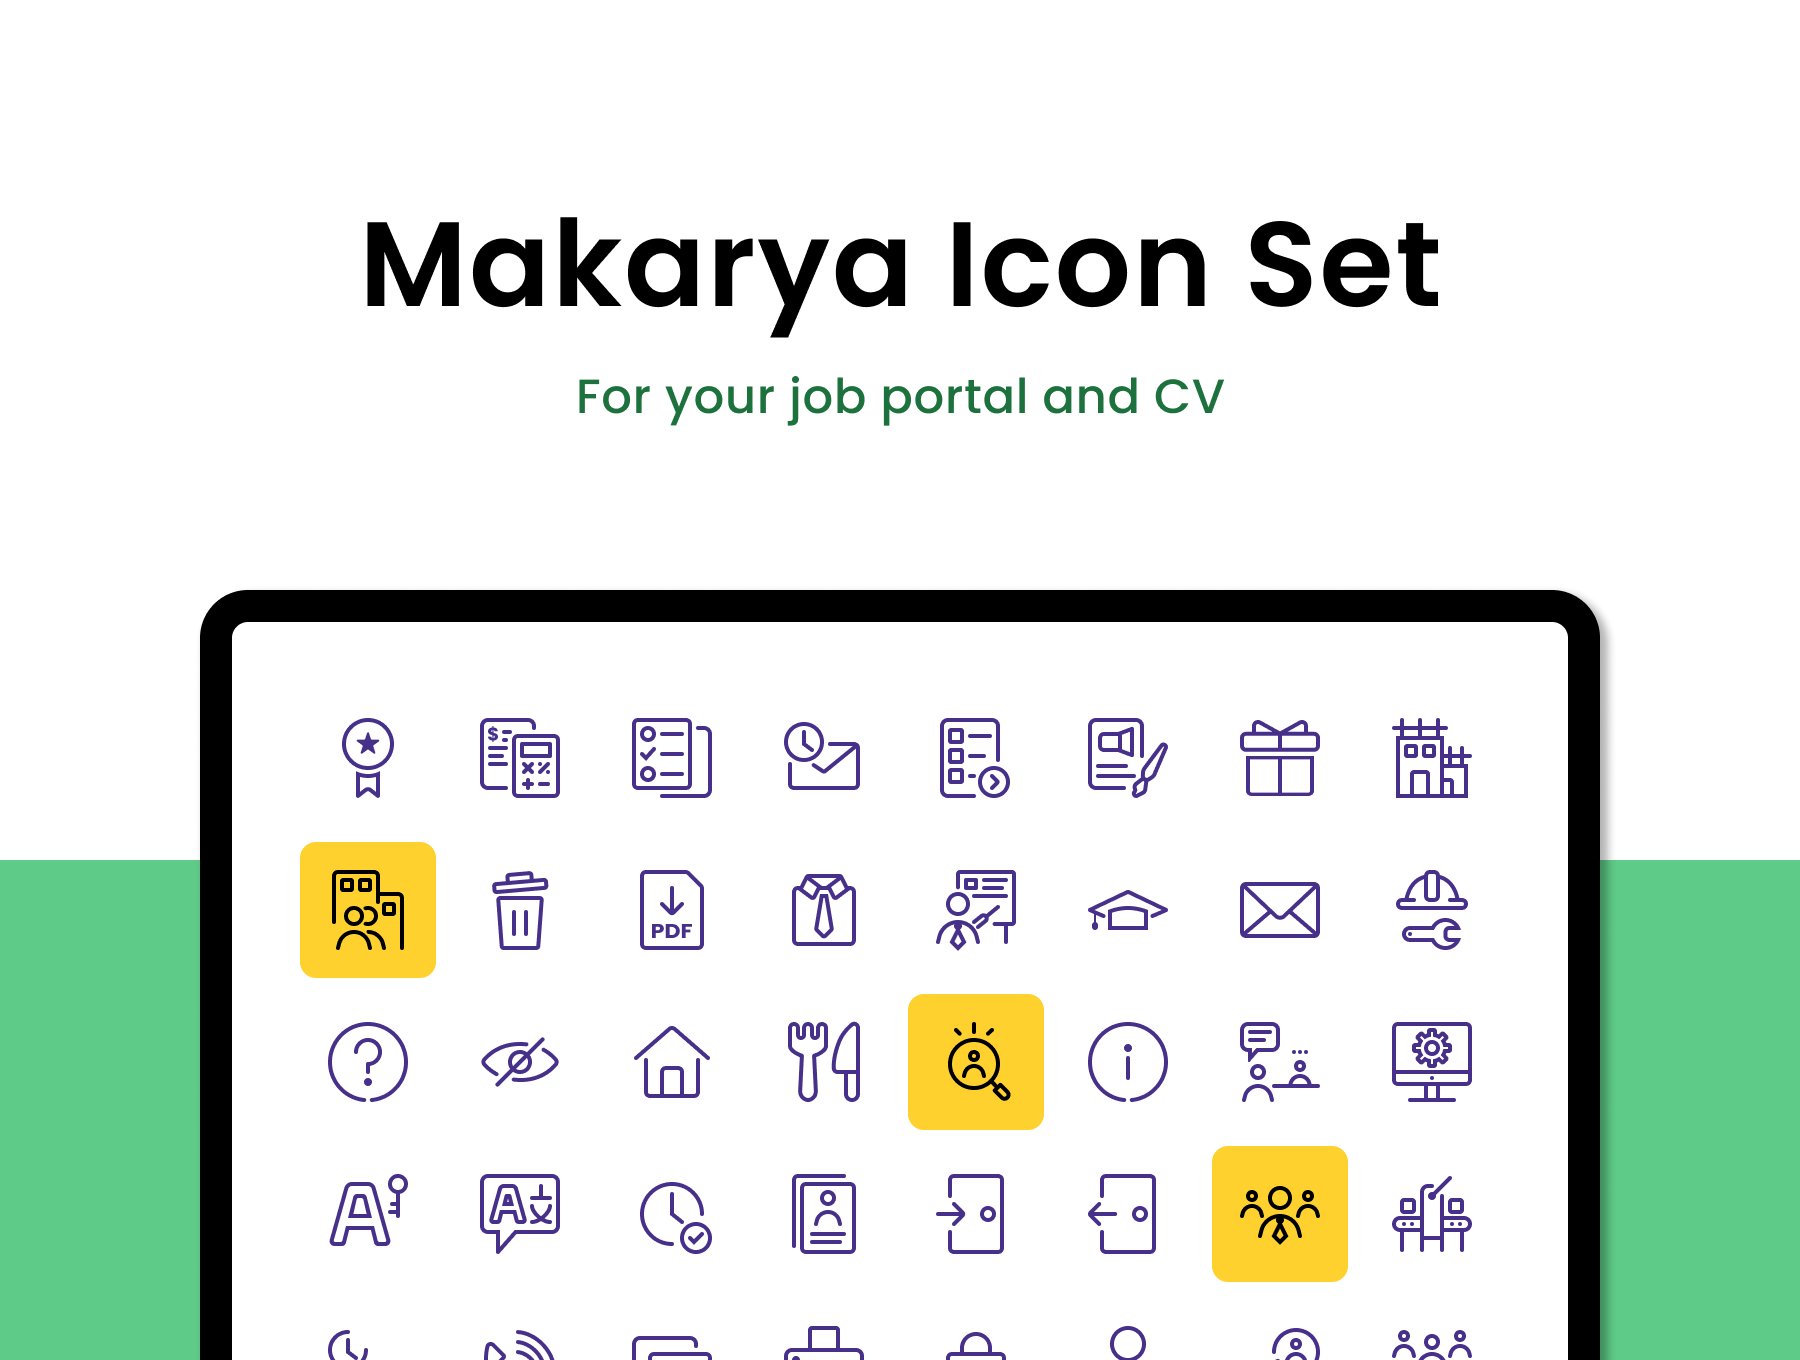 Makarya Icon Set preview image.